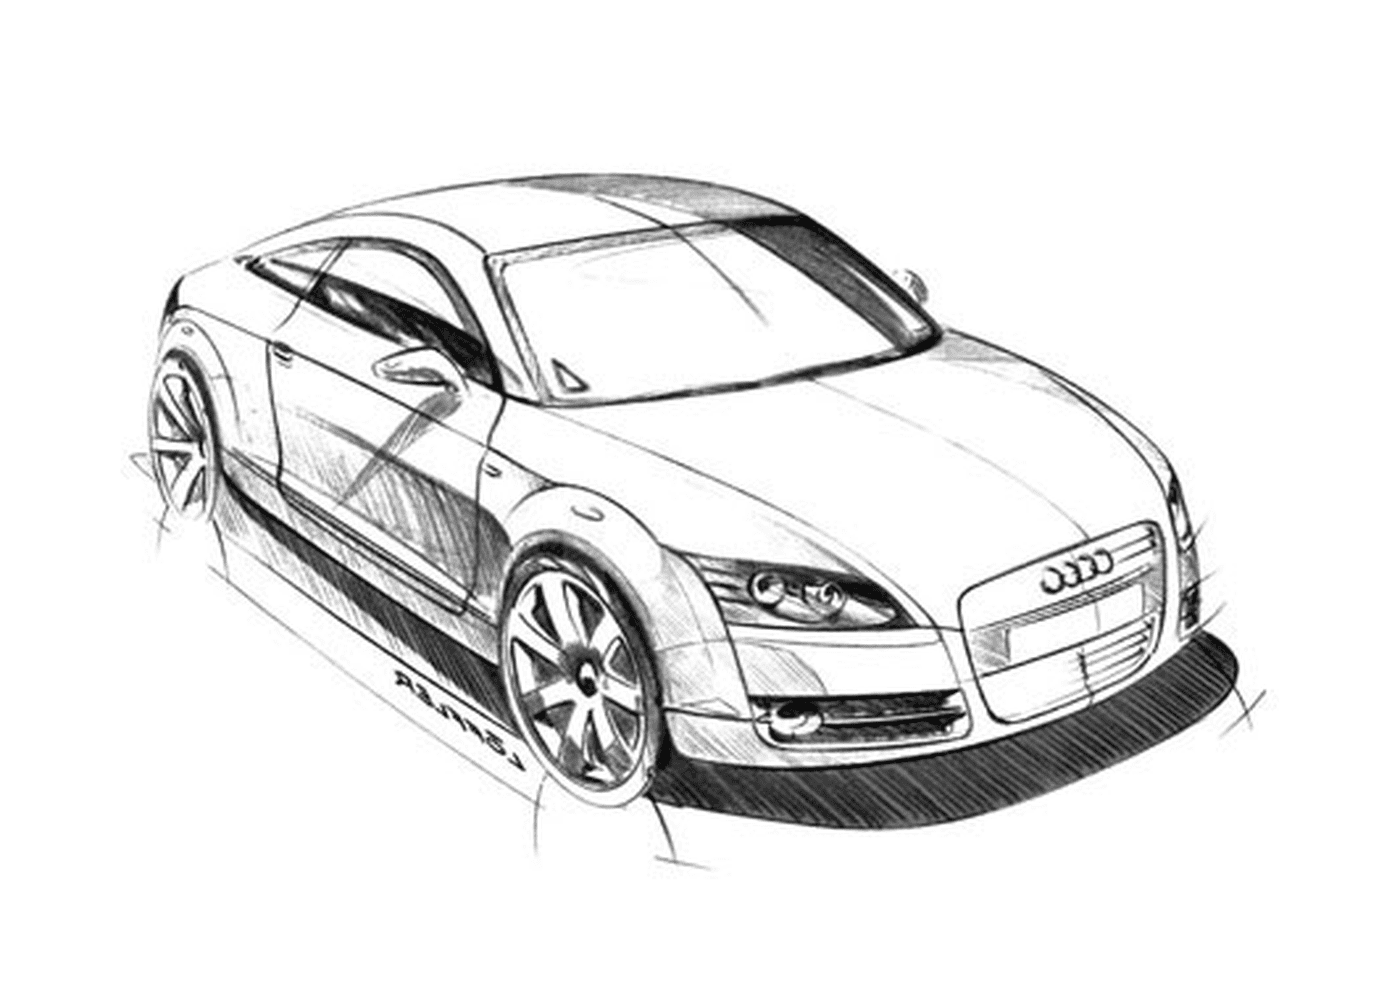  Audi imagen coche, Audi coche 